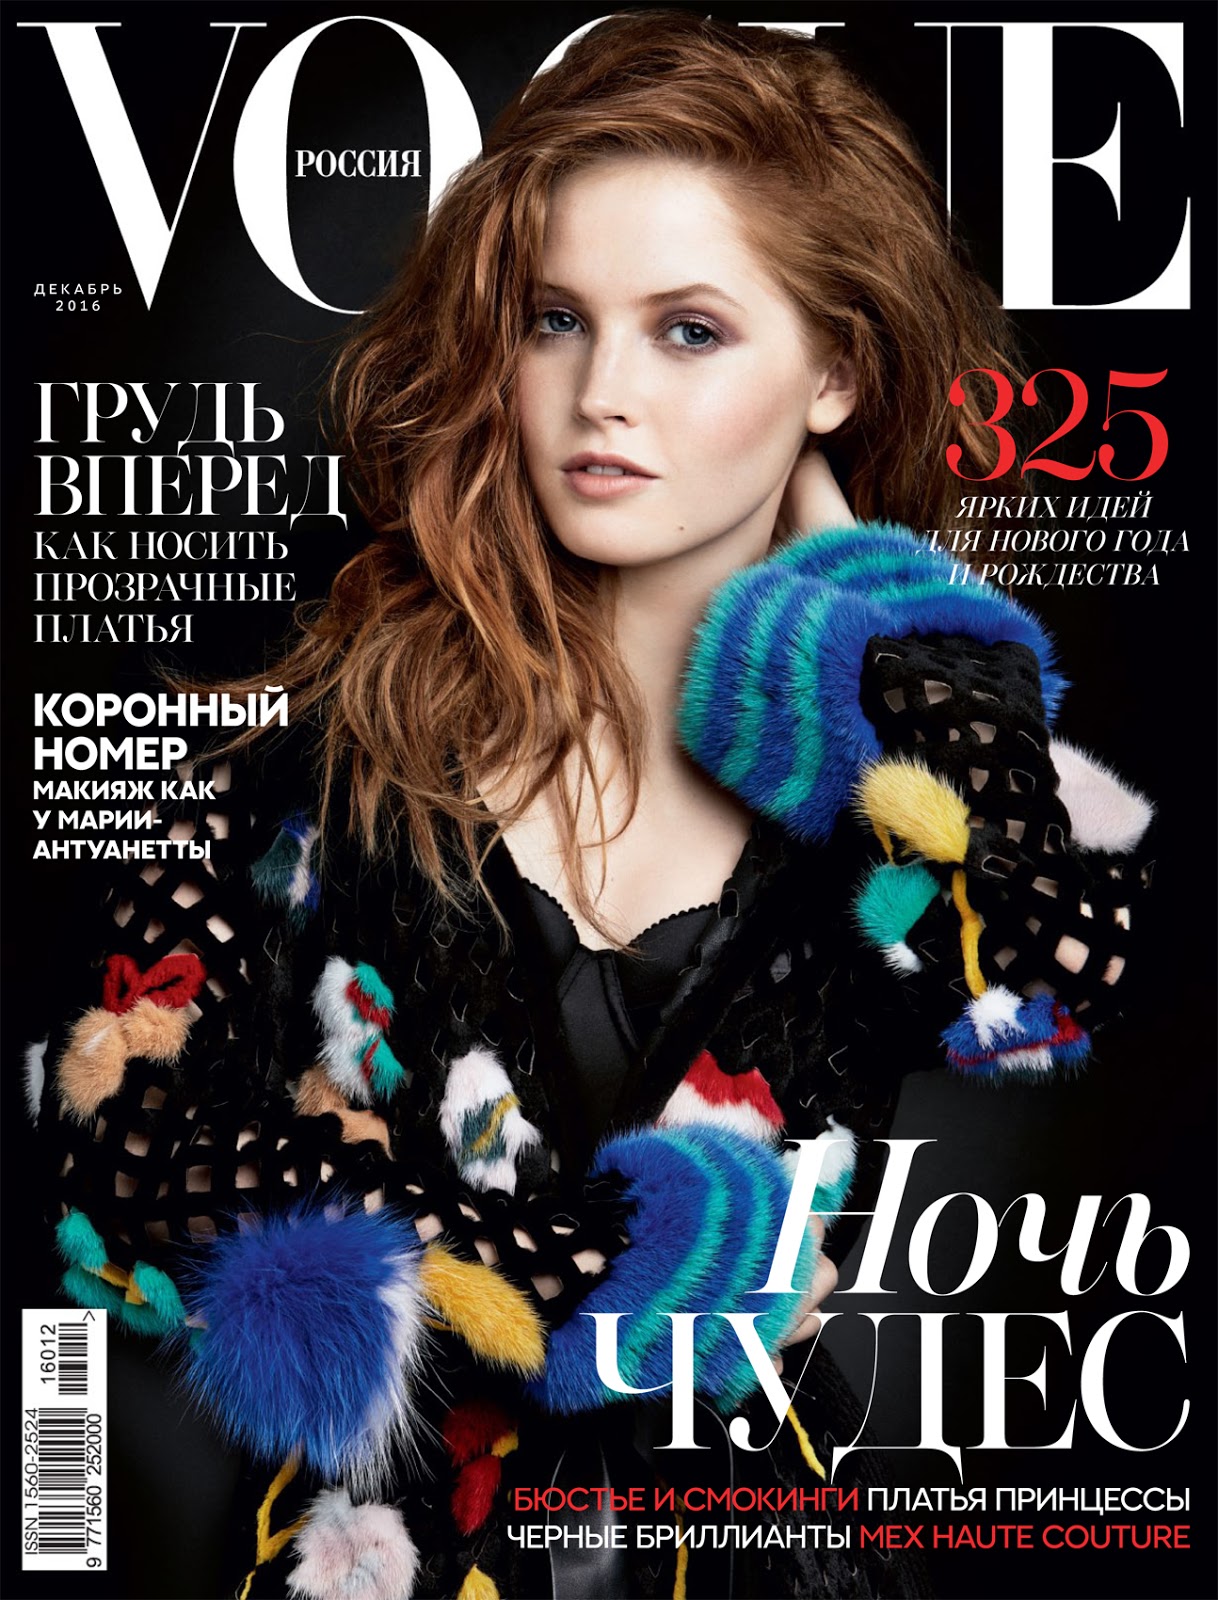 Vogue Russia Dec 2016 01